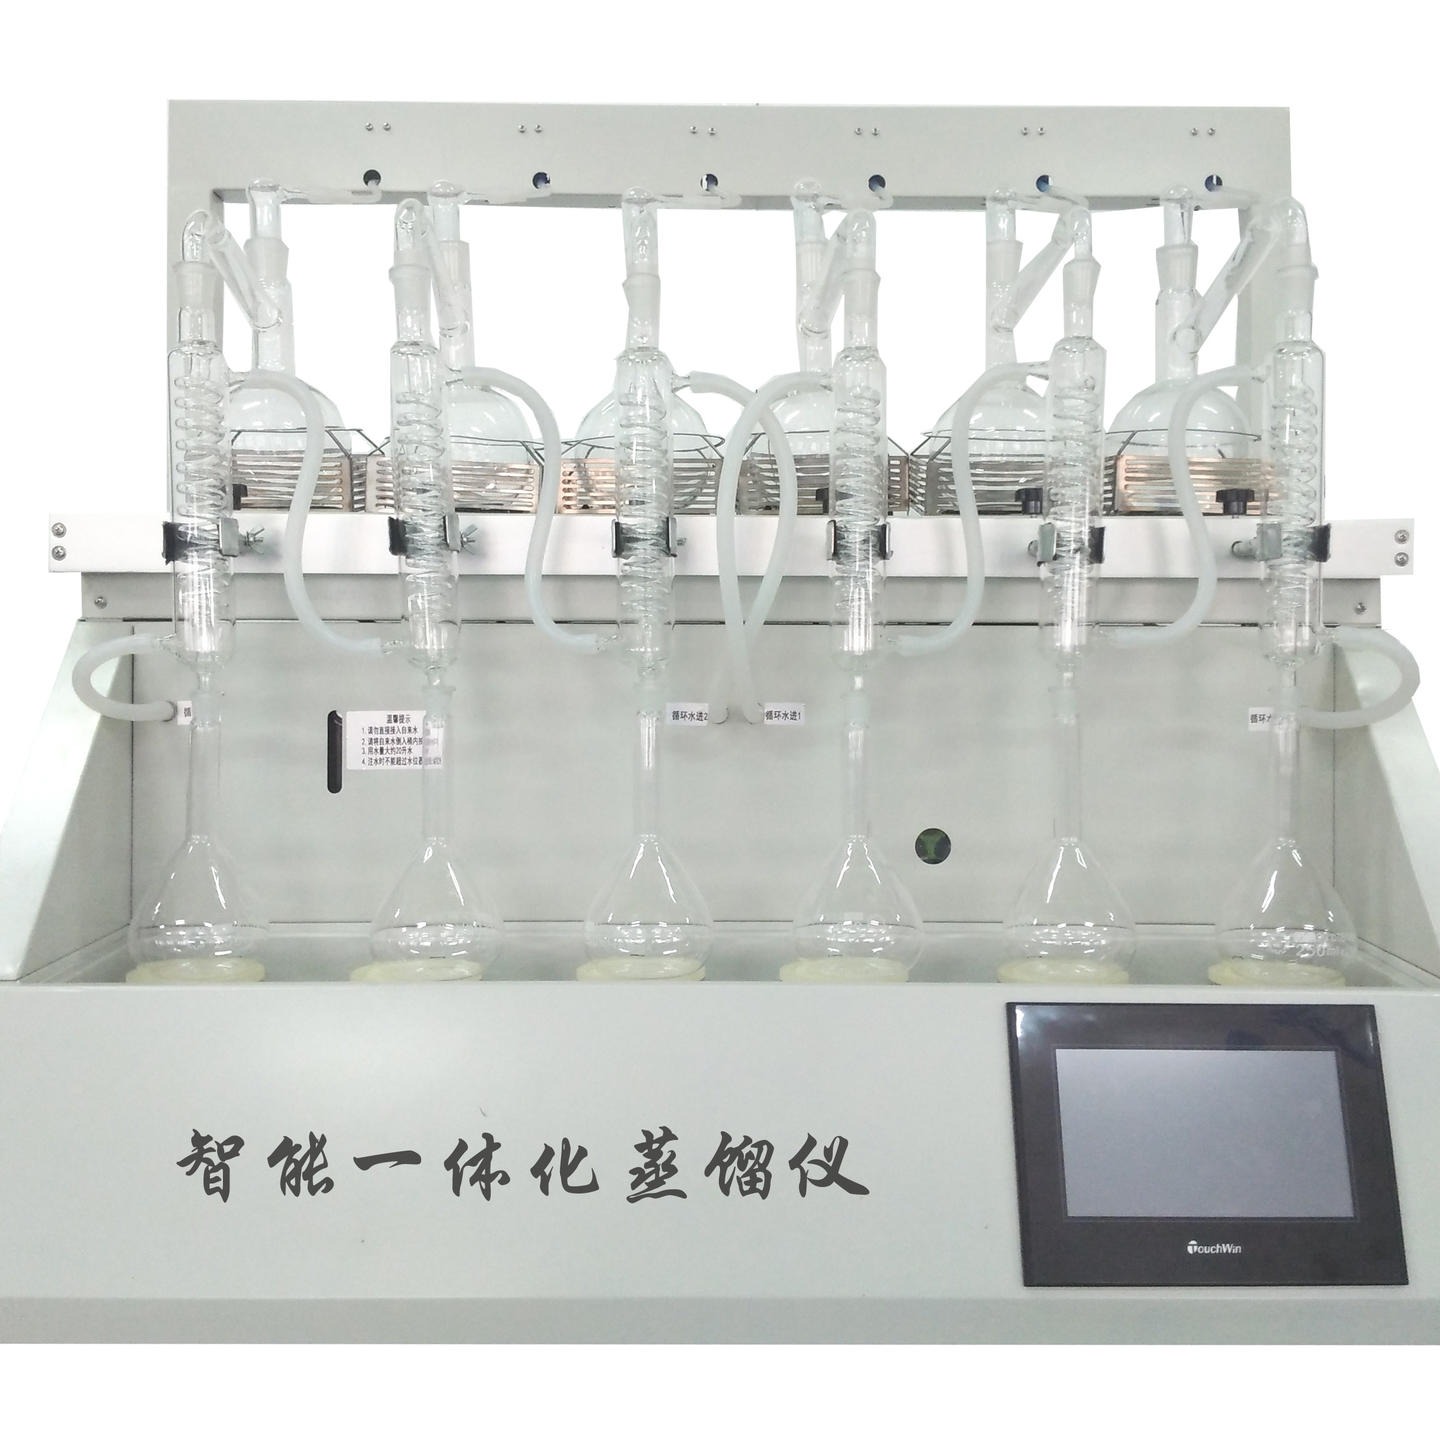 6联 全自动一体化蒸馏仪CYZL-6 标准型 回流装置